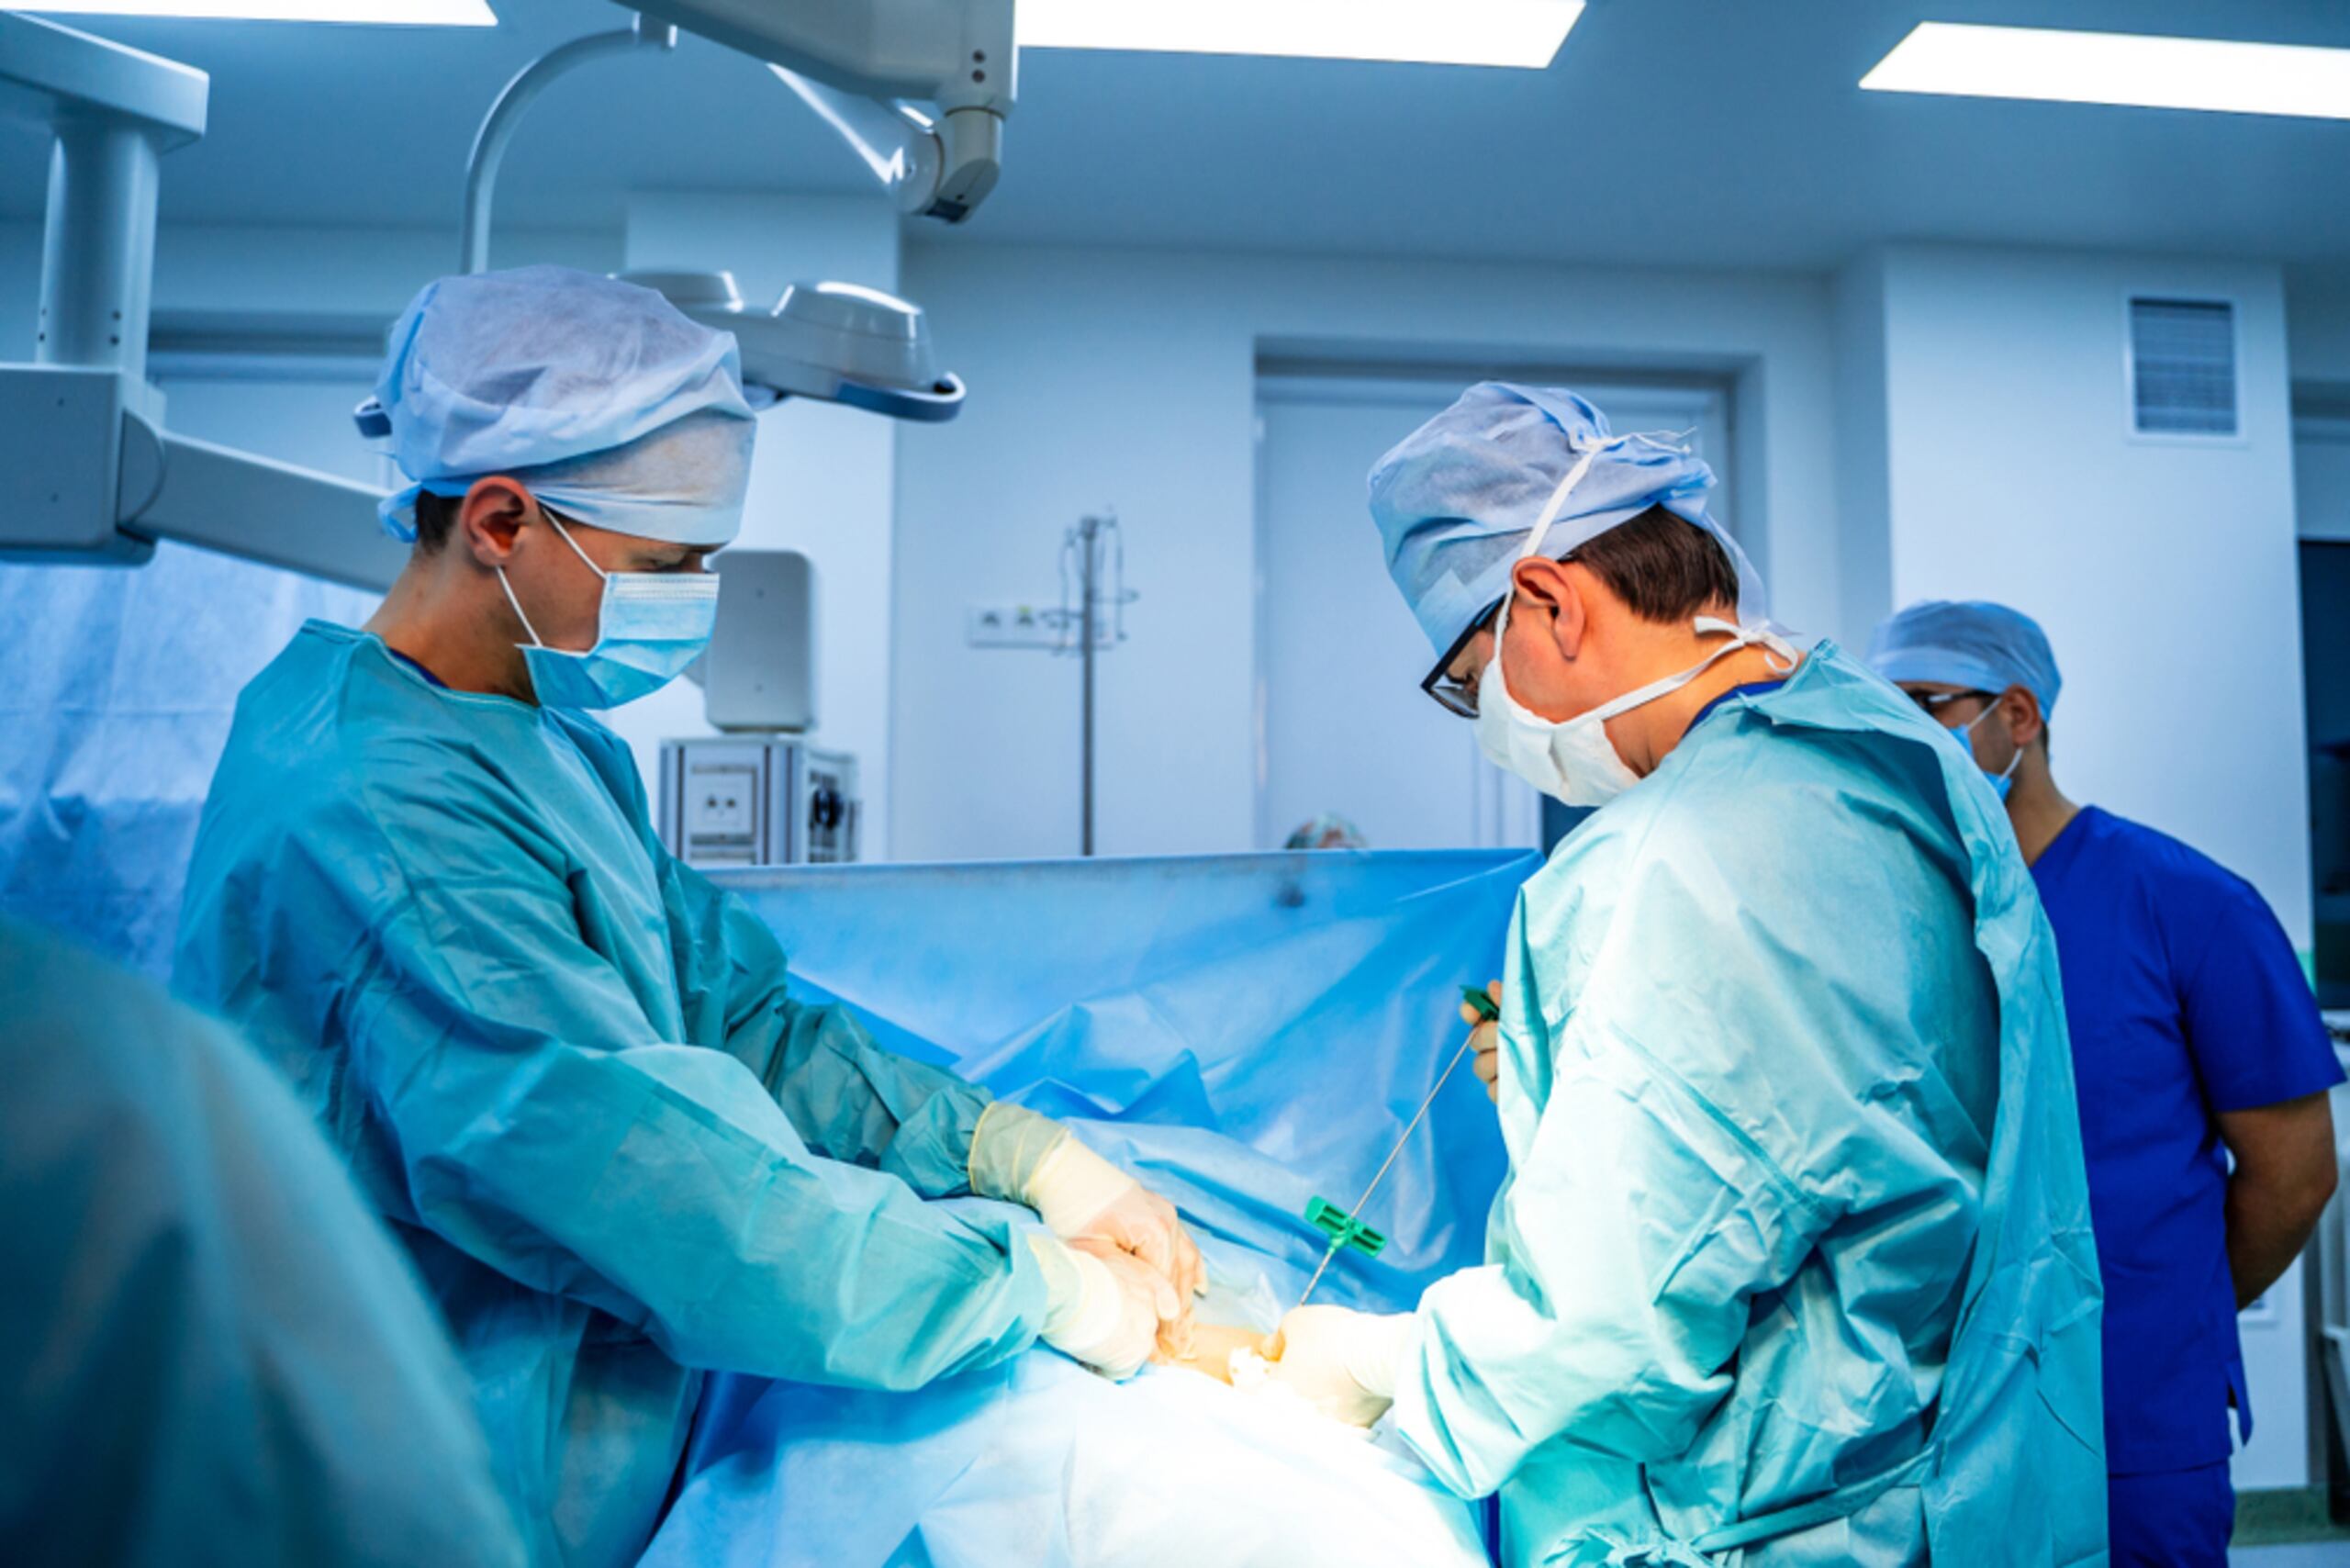 El Programa de Trasplante de Médula Ósea y Terapia Celular del Hospital Auxilio Mutuo ha ofrecido sus servicios ininterrumpidamente y realizando trasplantes de forma segura durante la pandemia.